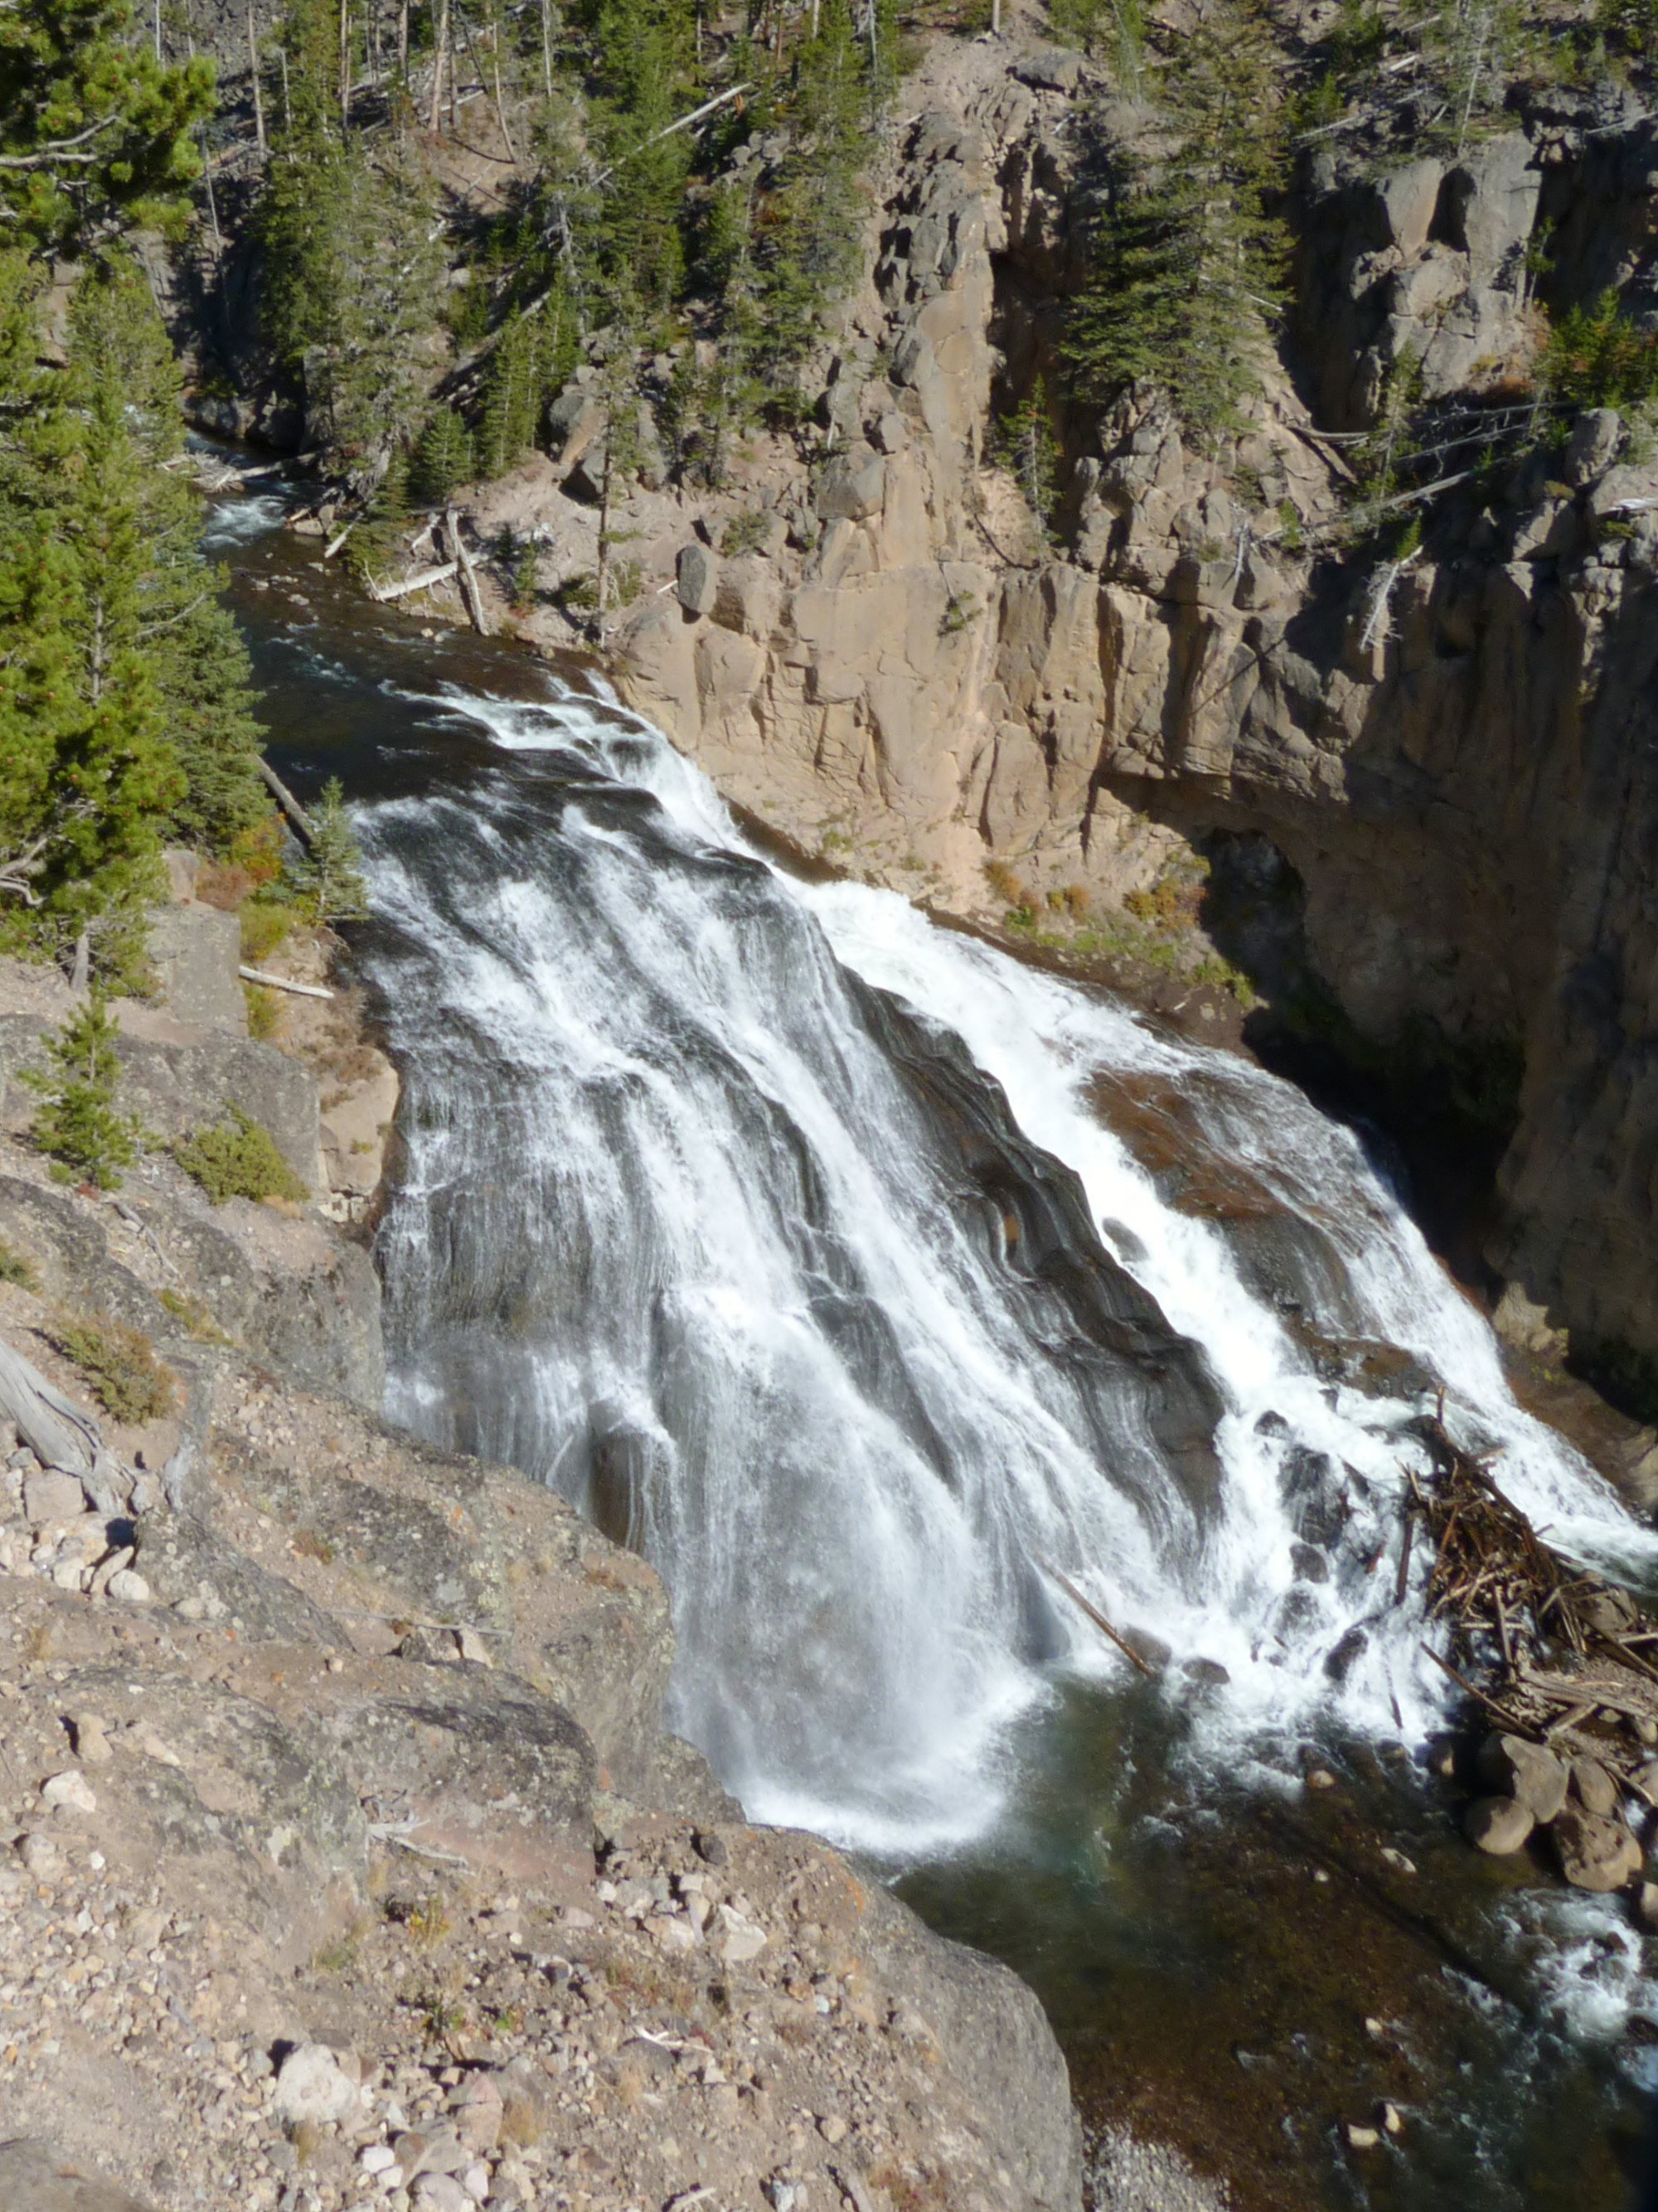 Waterfall with an 84-ft. drop & a gradual descen